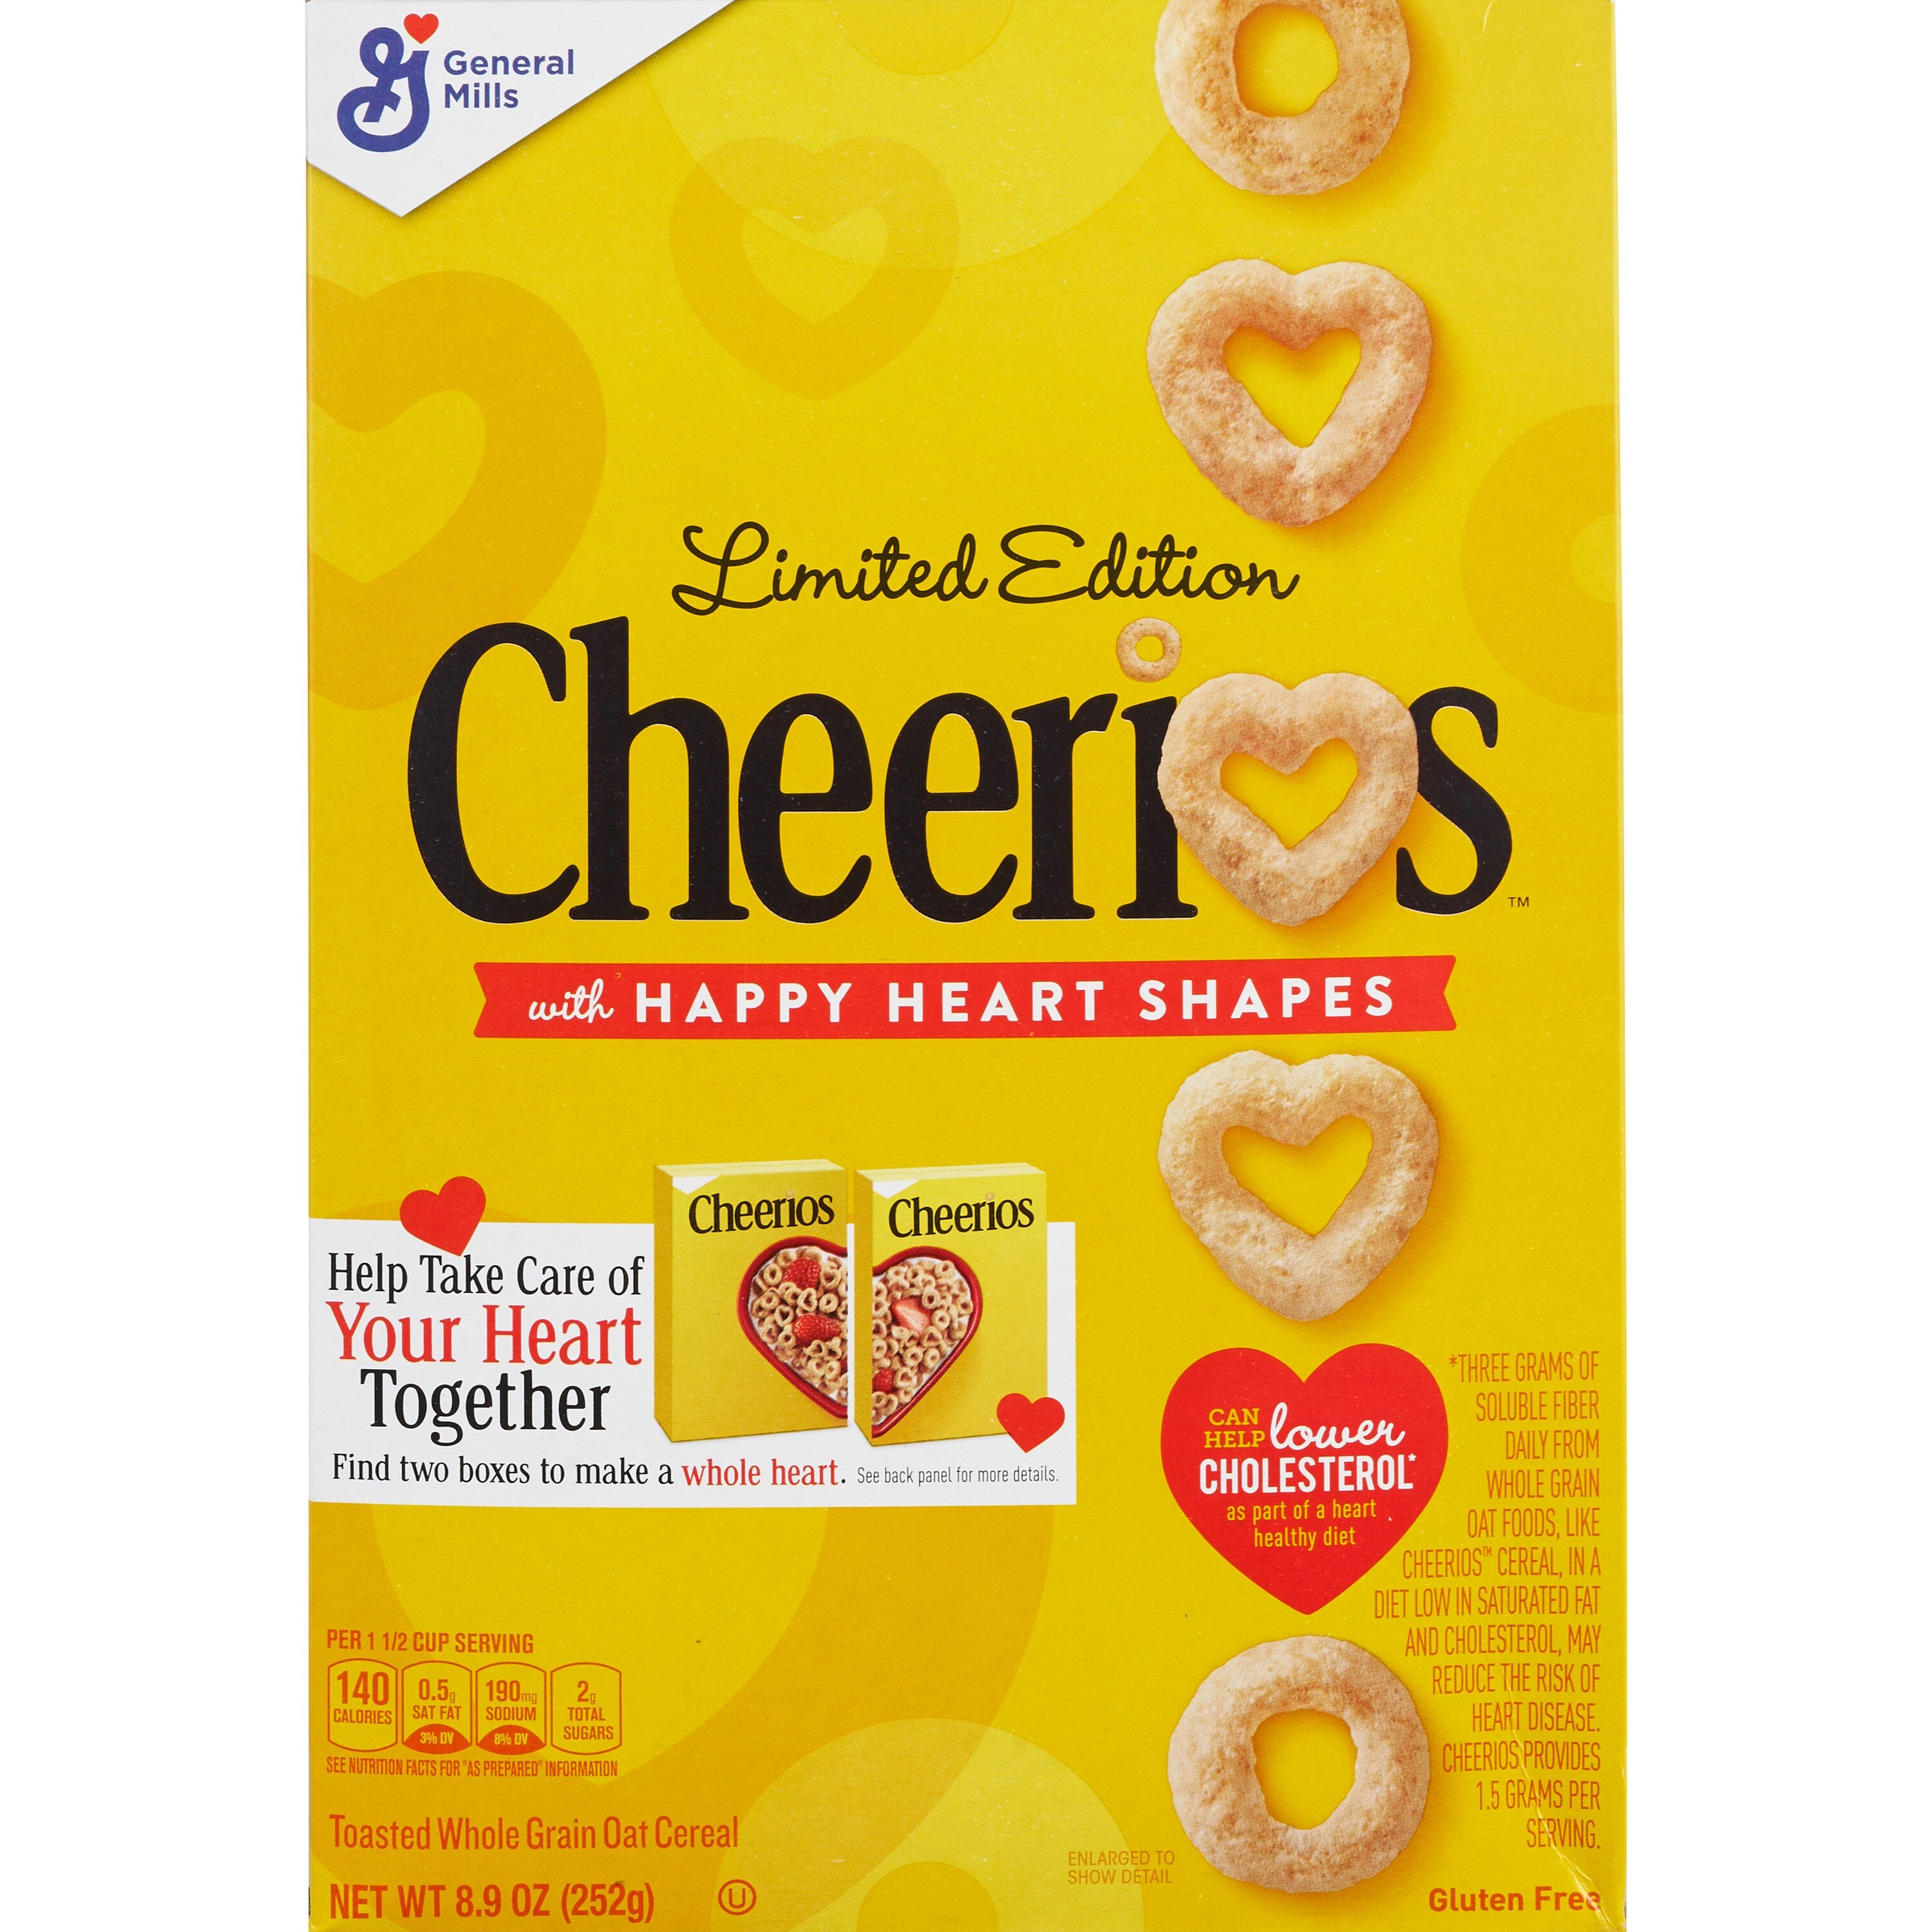 Cheerios Cereal, Original